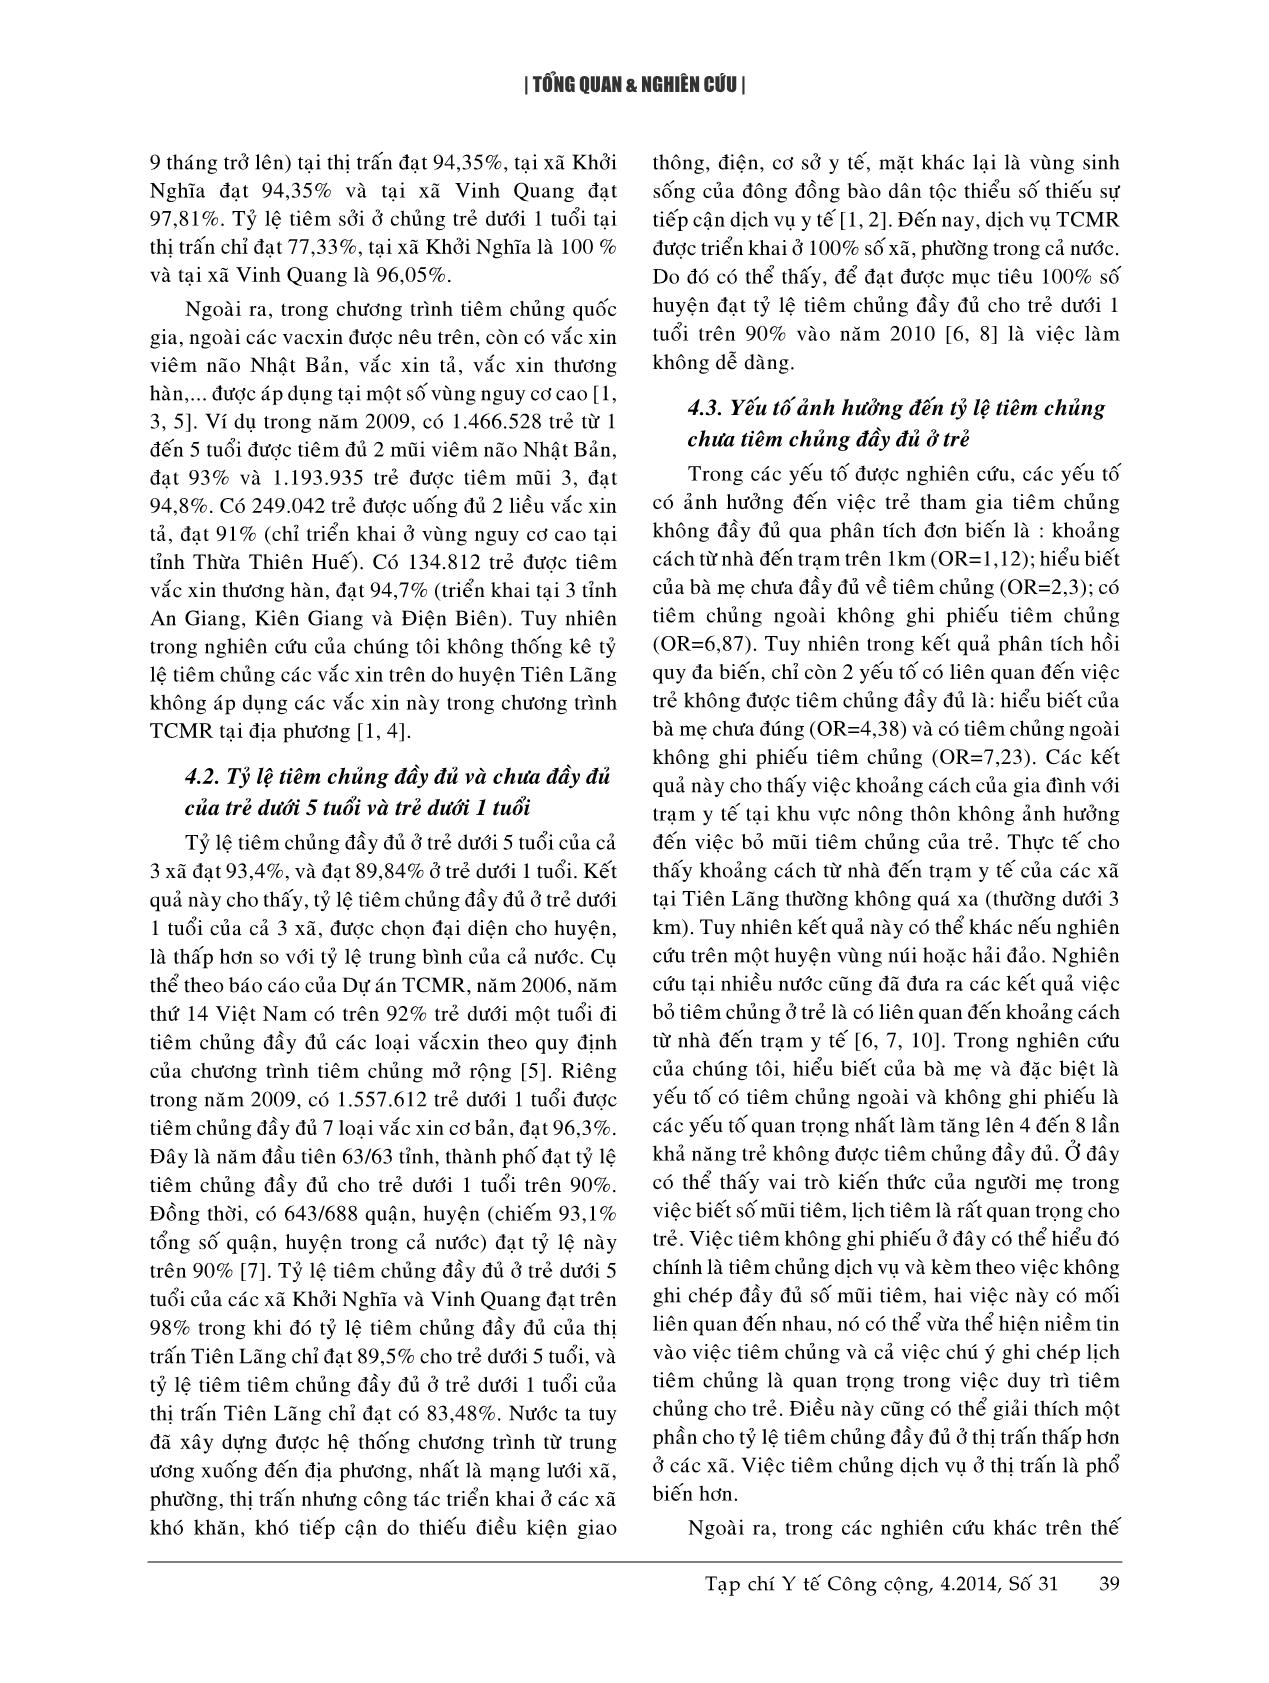 Tiêm chủng đầy đủ và một số yếu tố liên quan ở trẻ dưới 5 tuổi tại huyện Tiên Lãng, Hải Phòng - Năm 2010 trang 5